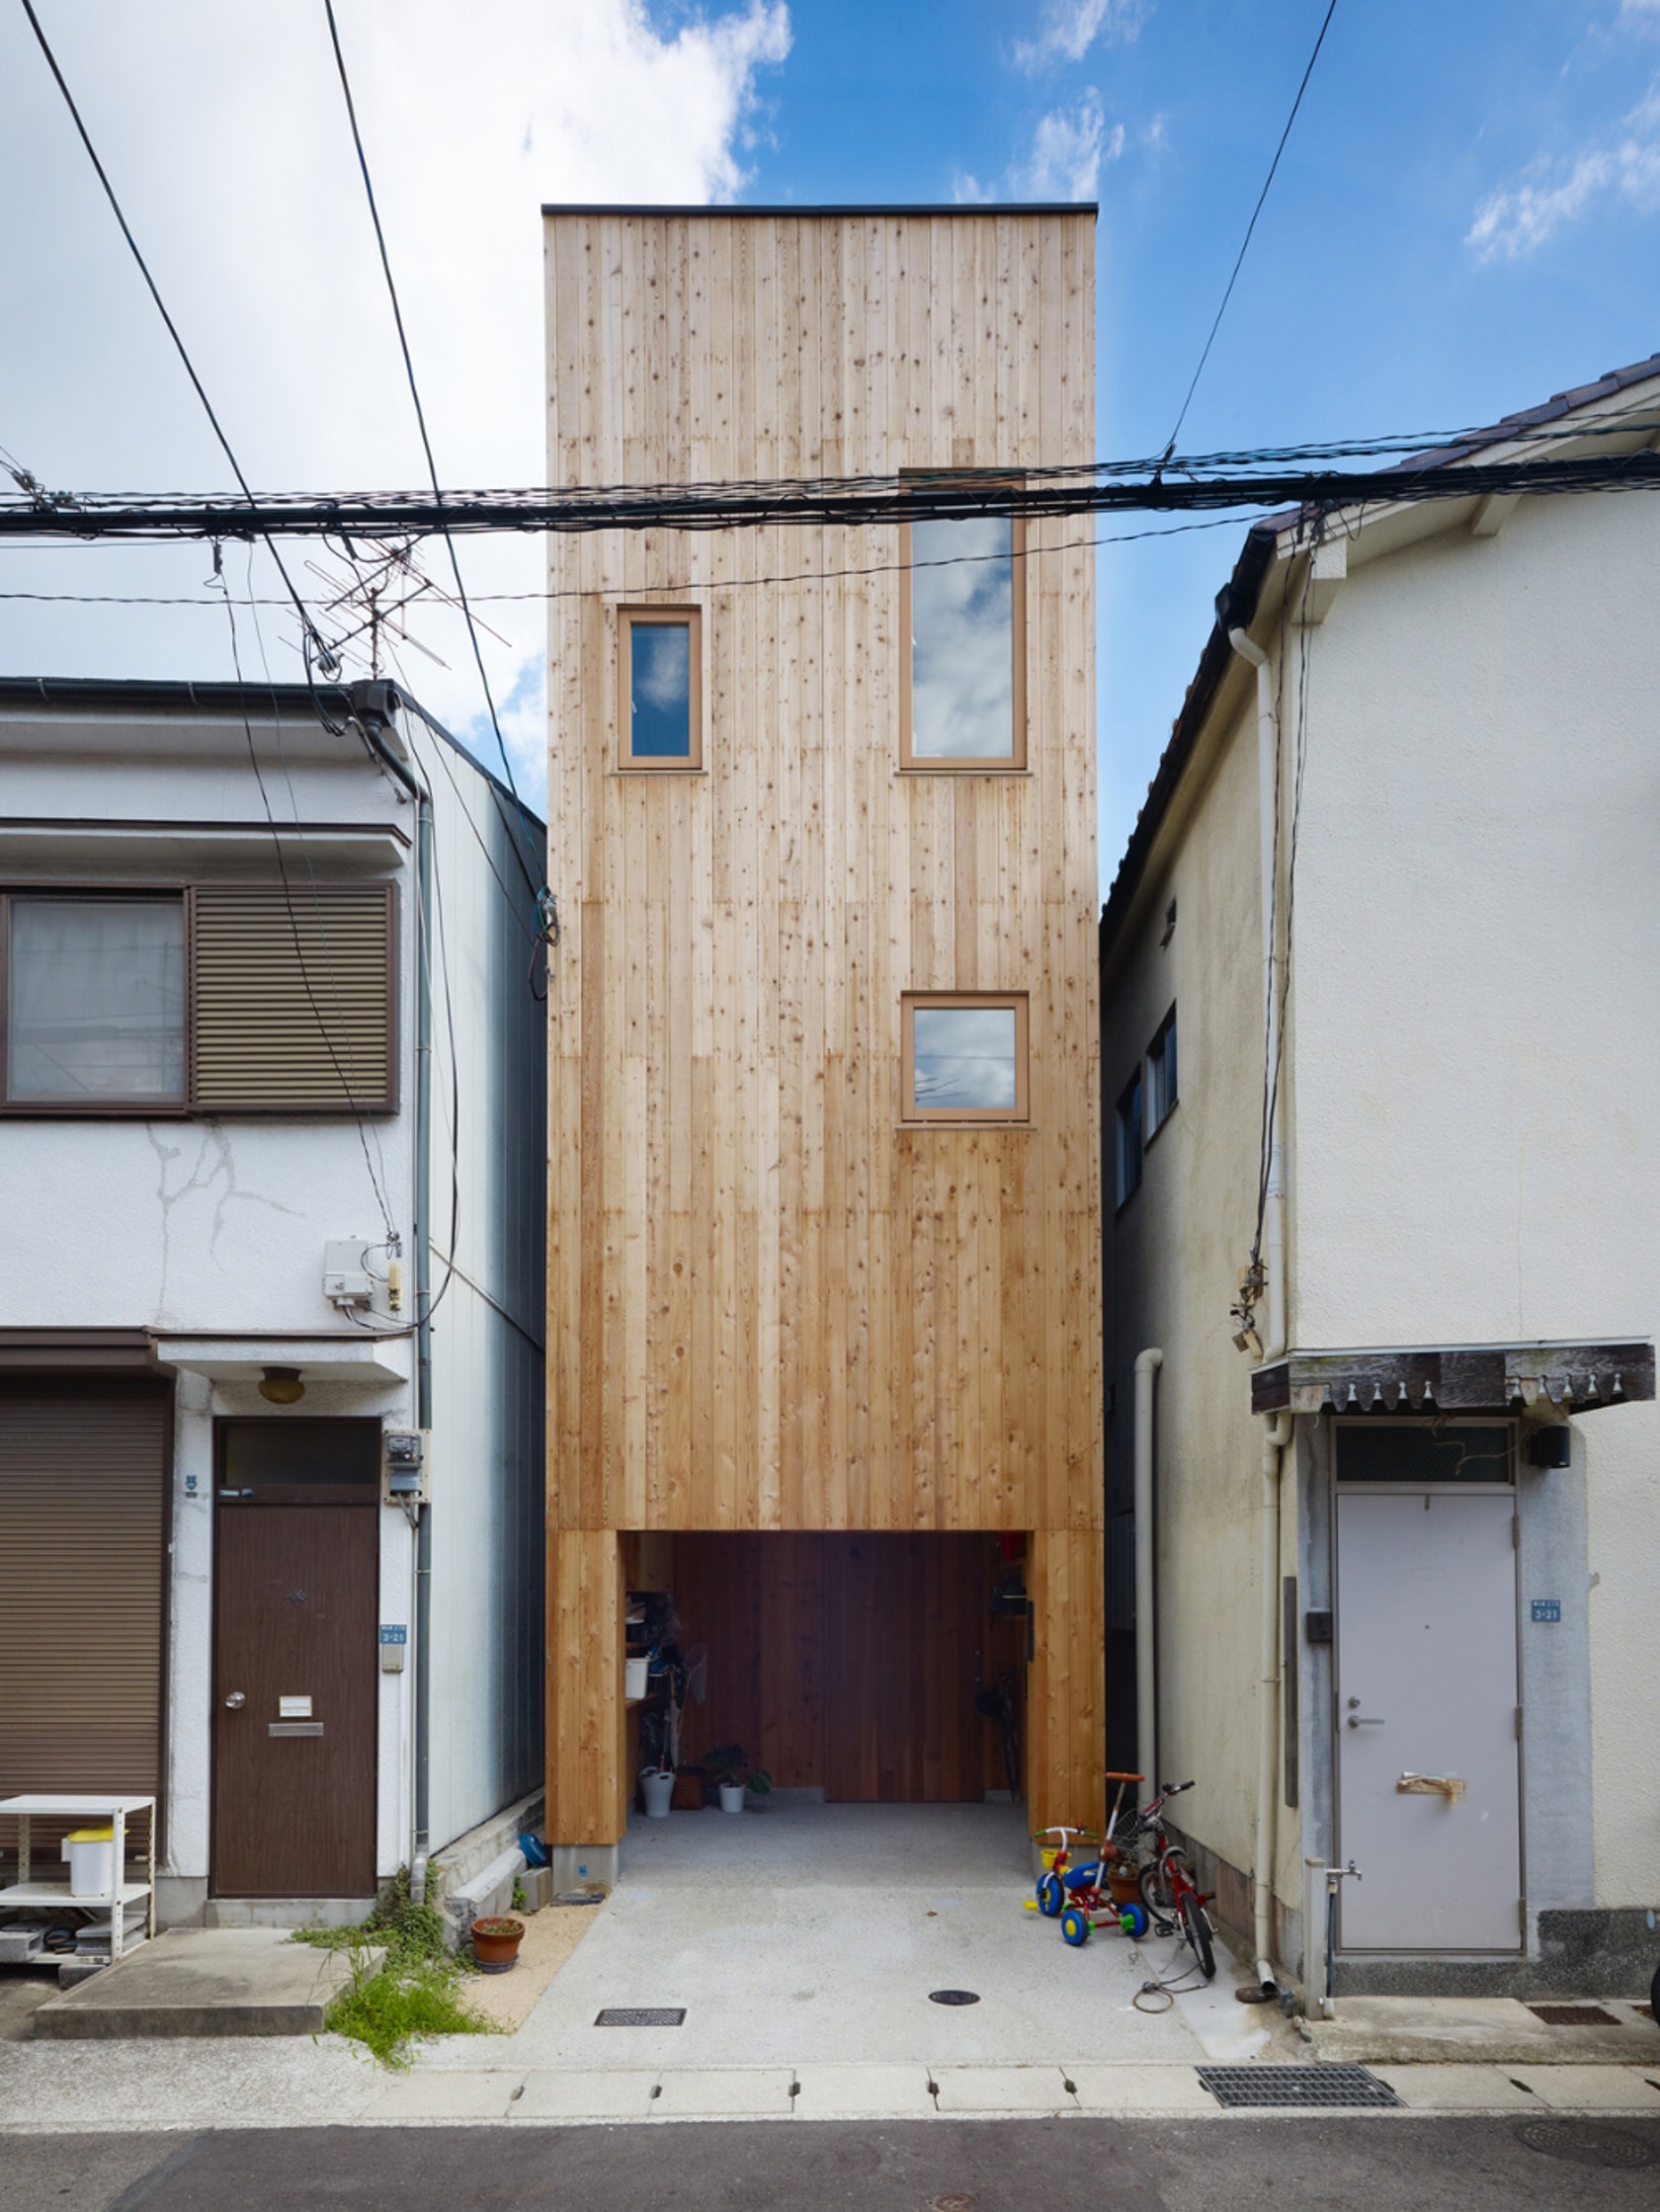 Download Desain Rumah Kecil Jepang Terupdate Desain Modern